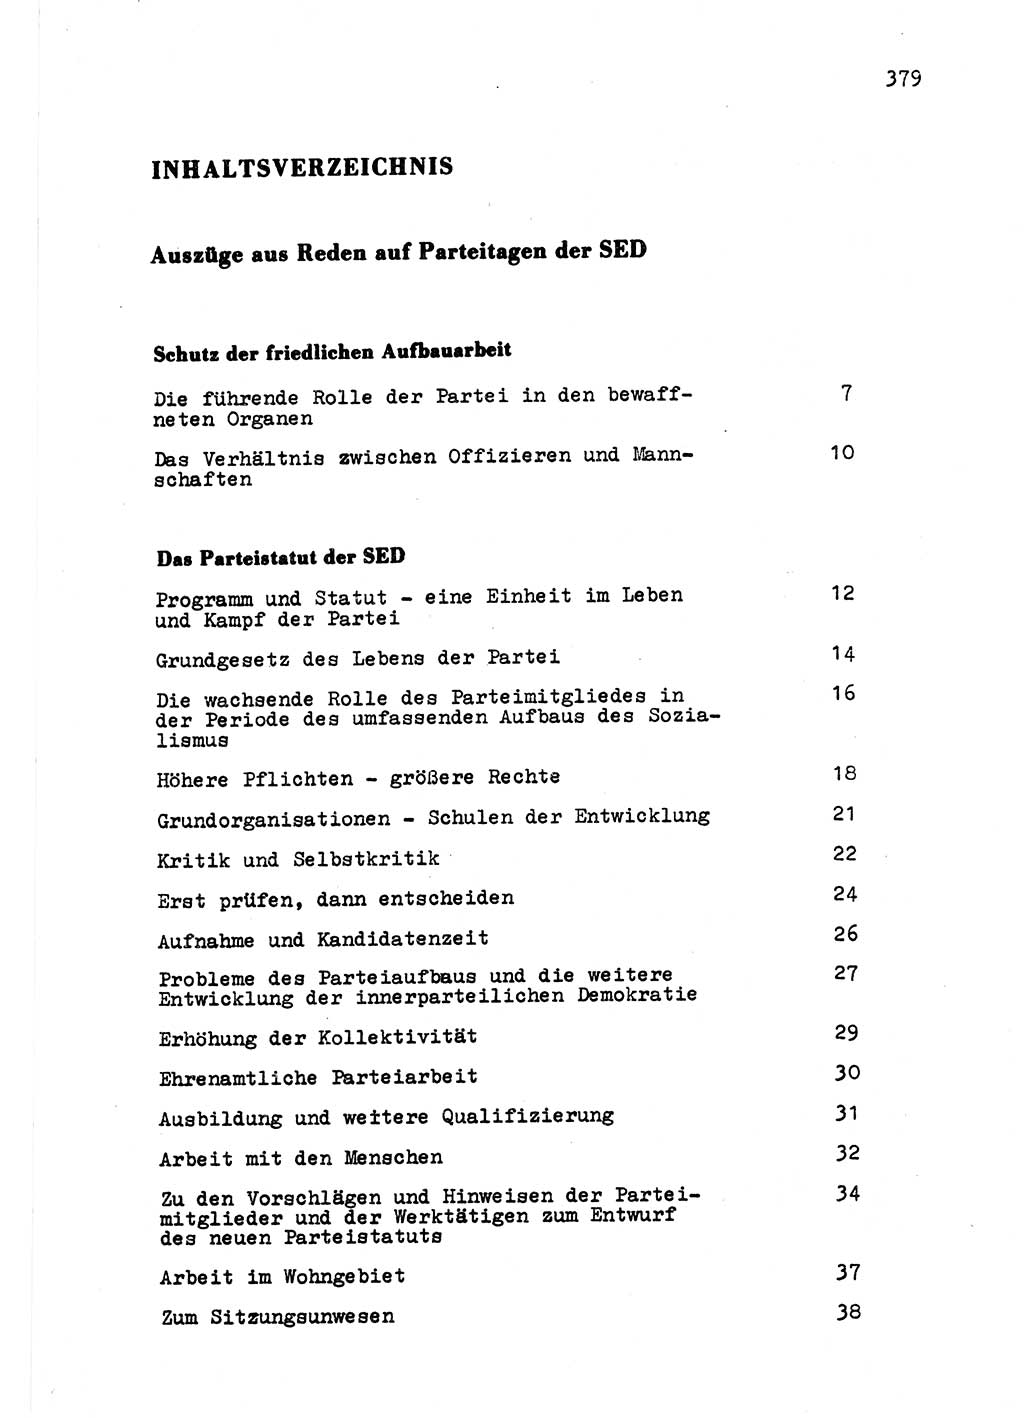 Zu Fragen der Parteiarbeit [Sozialistische Einheitspartei Deutschlands (SED) Deutsche Demokratische Republik (DDR)] 1979, Seite 379 (Fr. PA SED DDR 1979, S. 379)